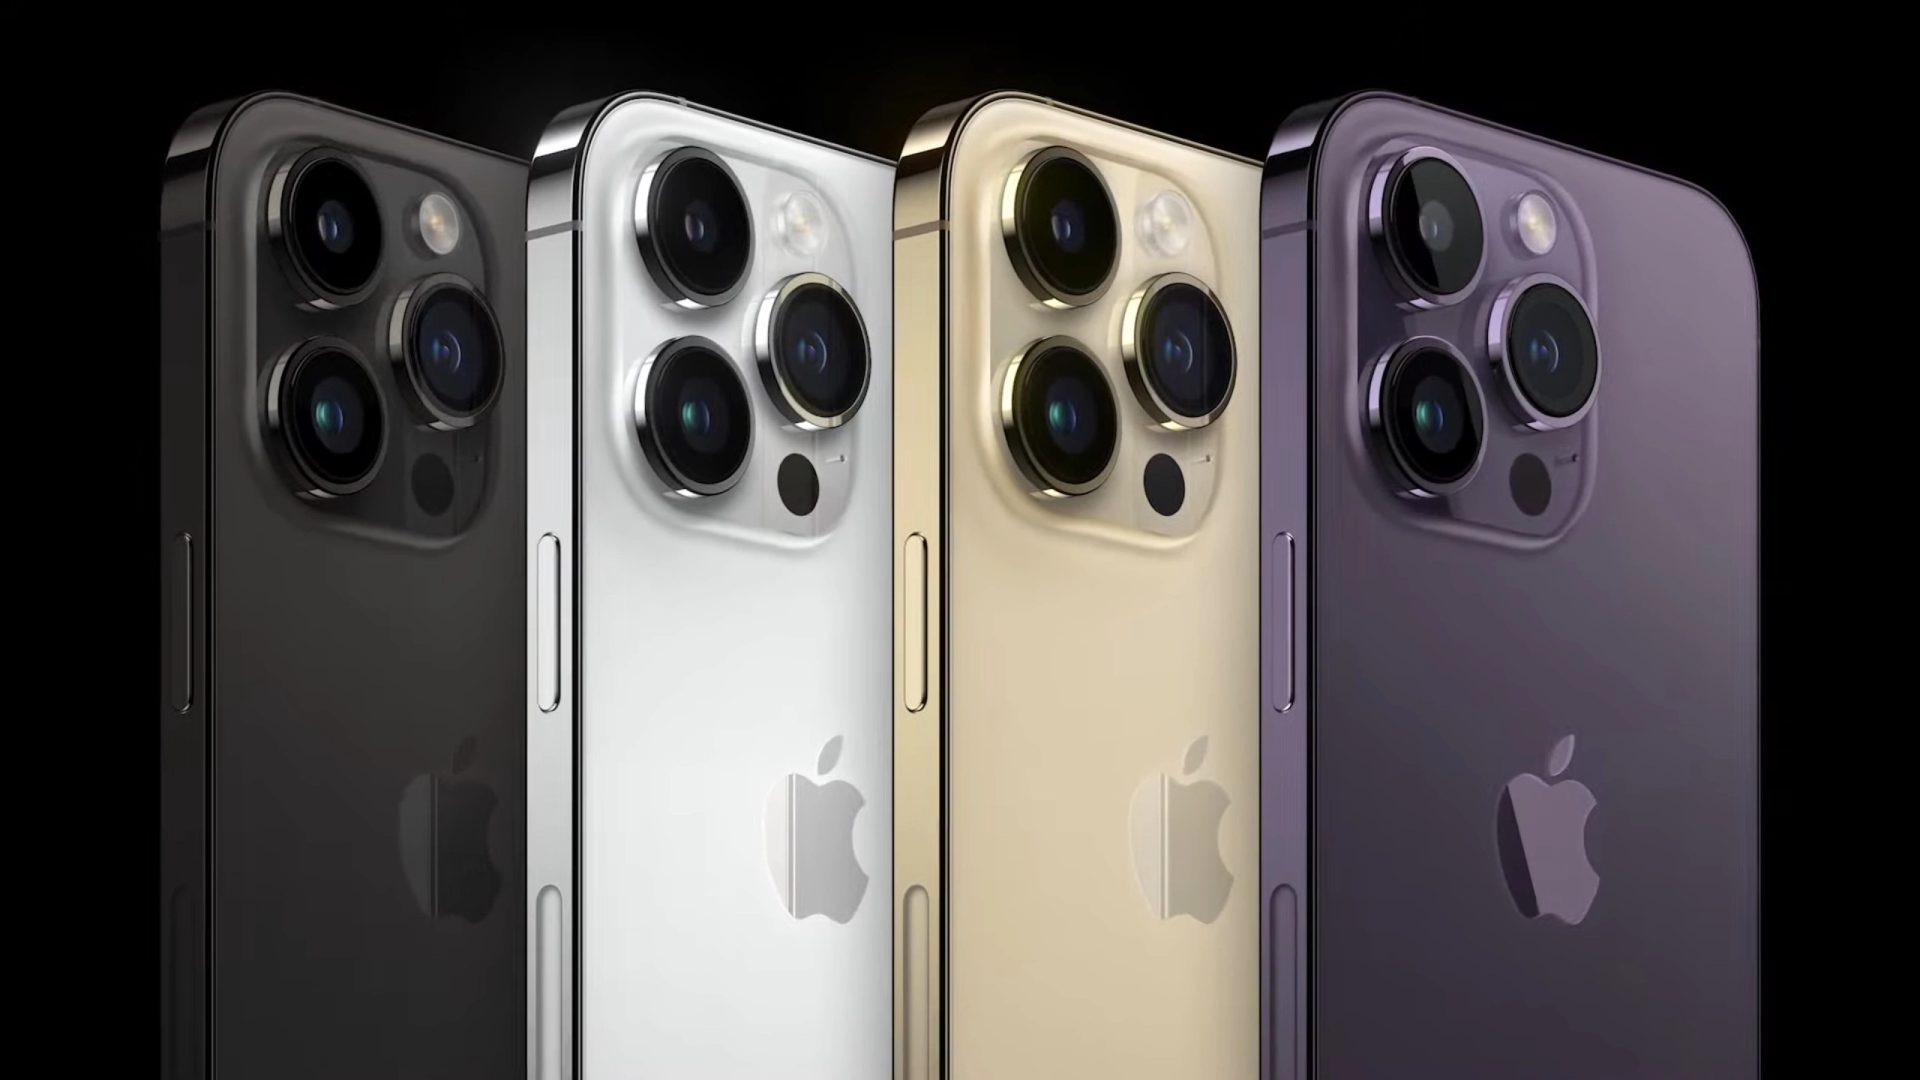 Apple ने लॉन्च किया iPhone 14 series, जानें iphone 14 pro, Apple watch 8, Airpods pro 2 और अन्य की खासियत सहित कीमत, देखें नई अपडेट